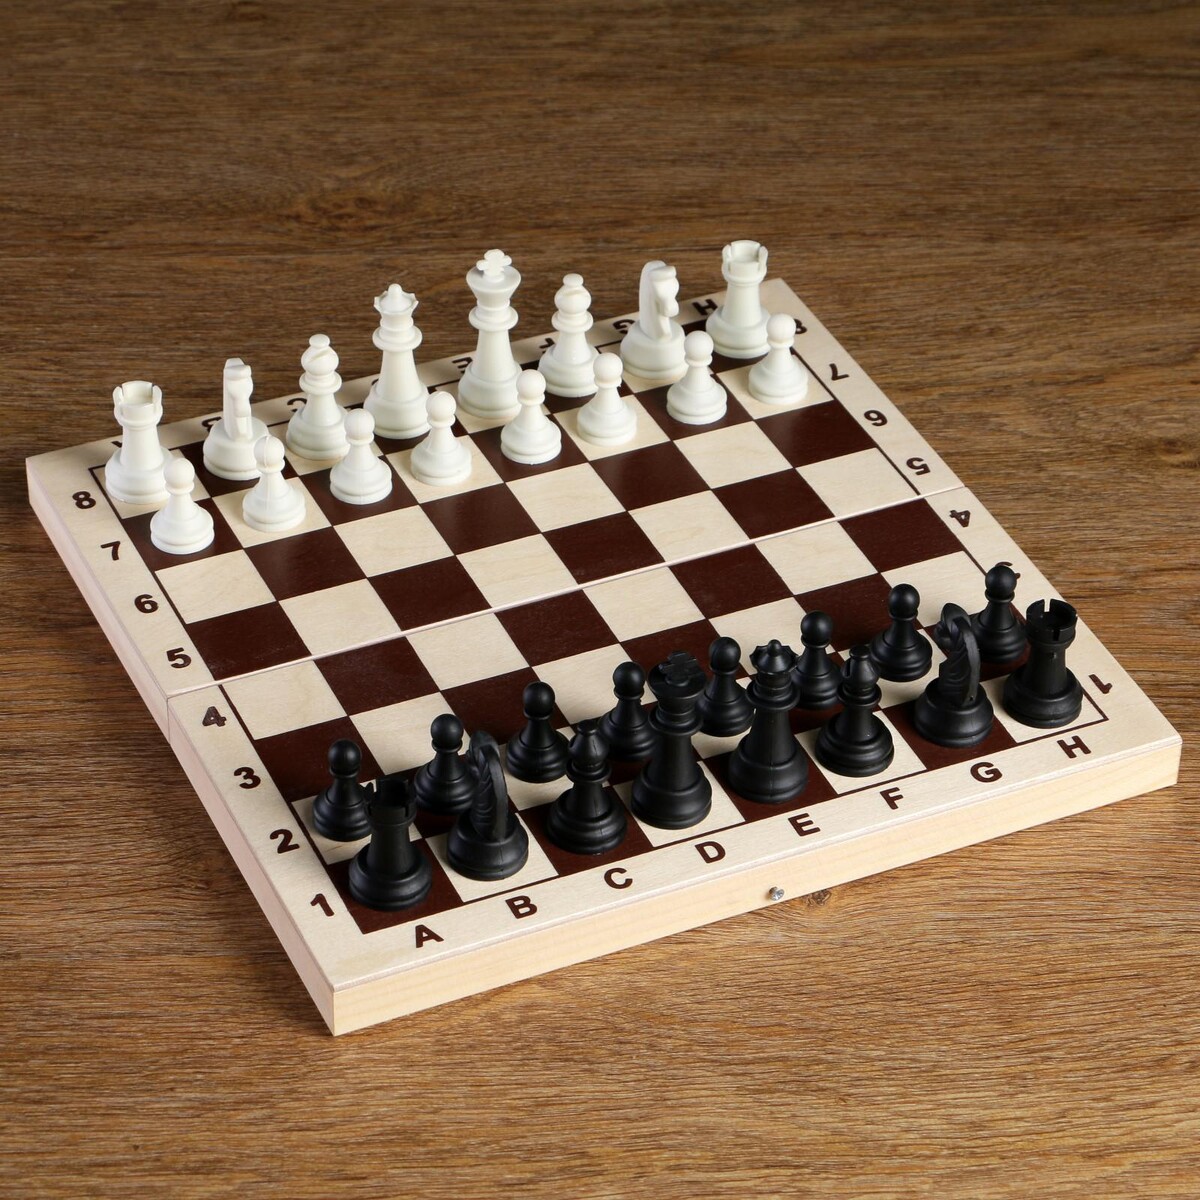 Шахматные фигуры, король h-6.2 см, пешка h-3.2 см, черно-белые железный король